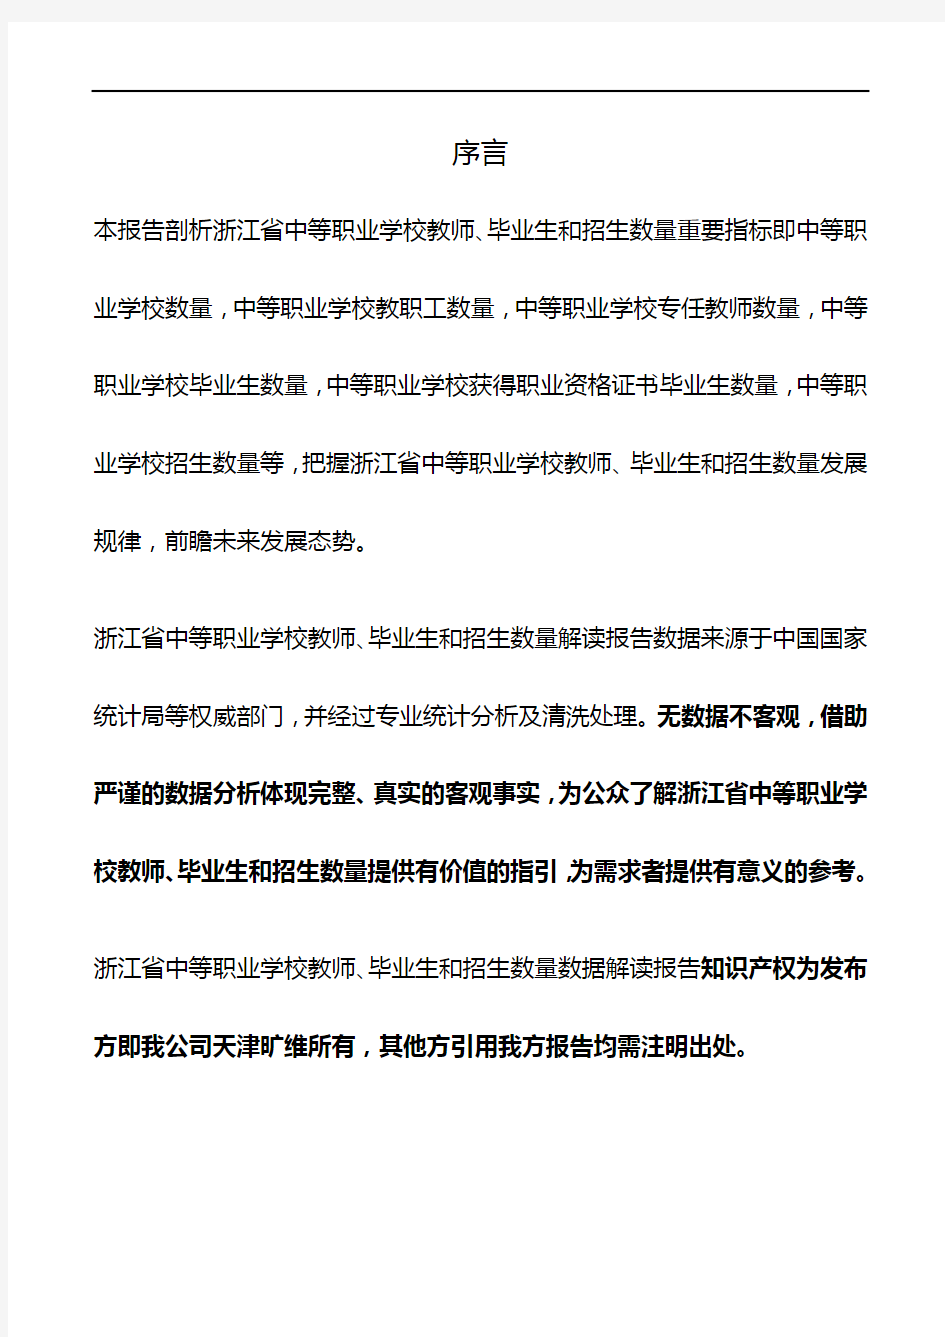 浙江省中等职业学校教师、毕业生和招生数量3年数据解读报告2020版